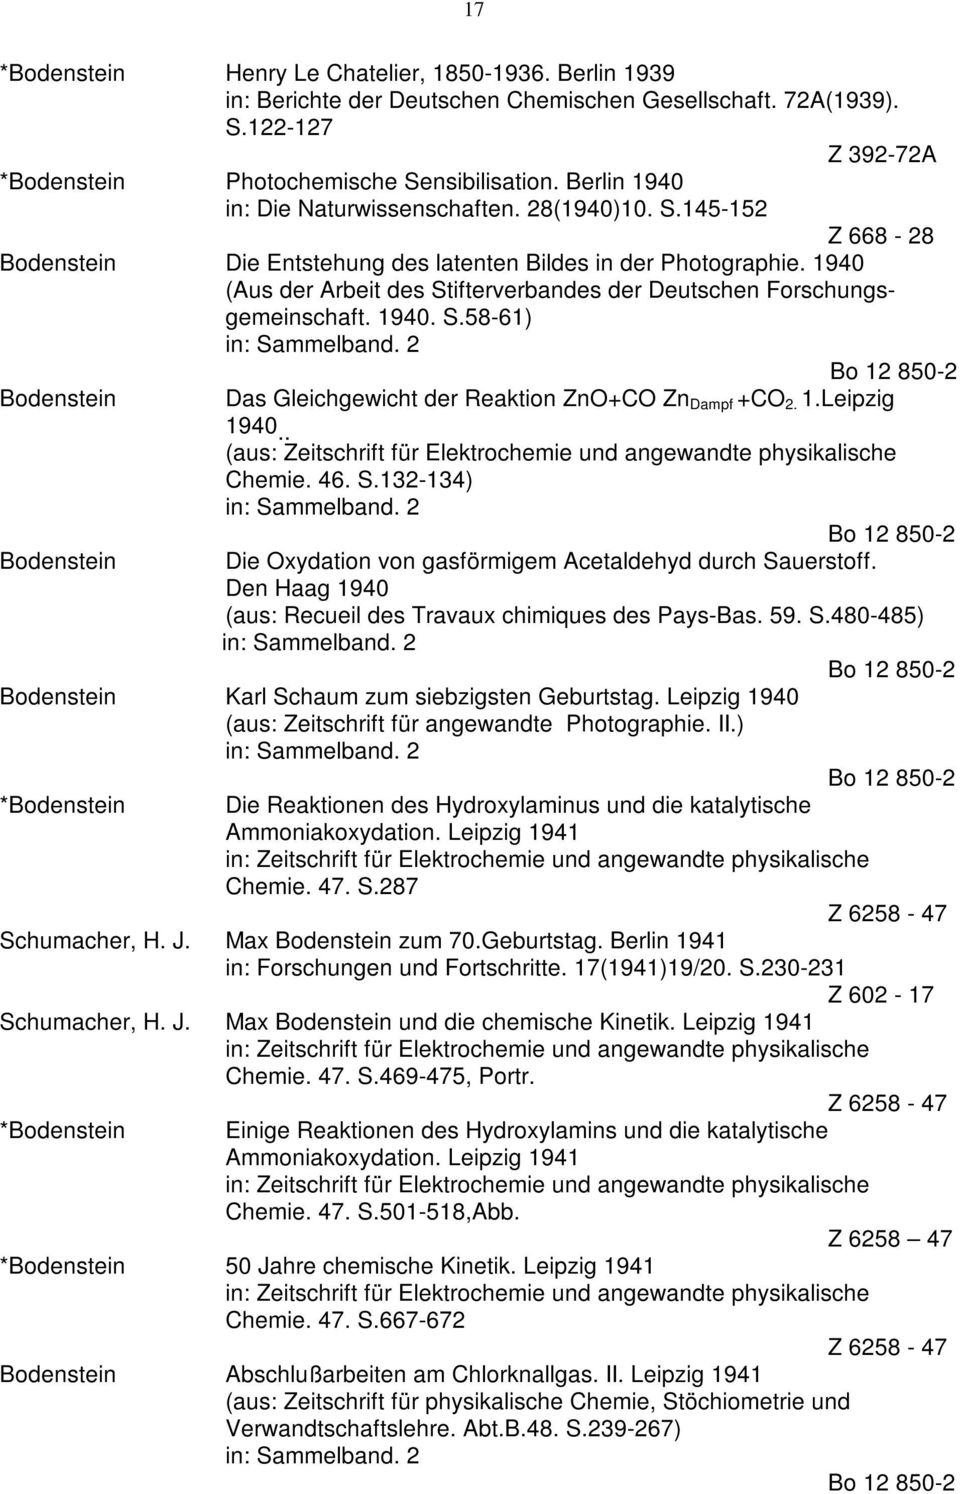 1940 (Aus der Arbeit des Stifterverbandes der Deutschen Forschungsgemeinschaft. 1940. S.58-61) Das Gleichgewicht der Reaktion ZnO+CO Zn Dampf +CO 2. 1.Leipzig 1940.